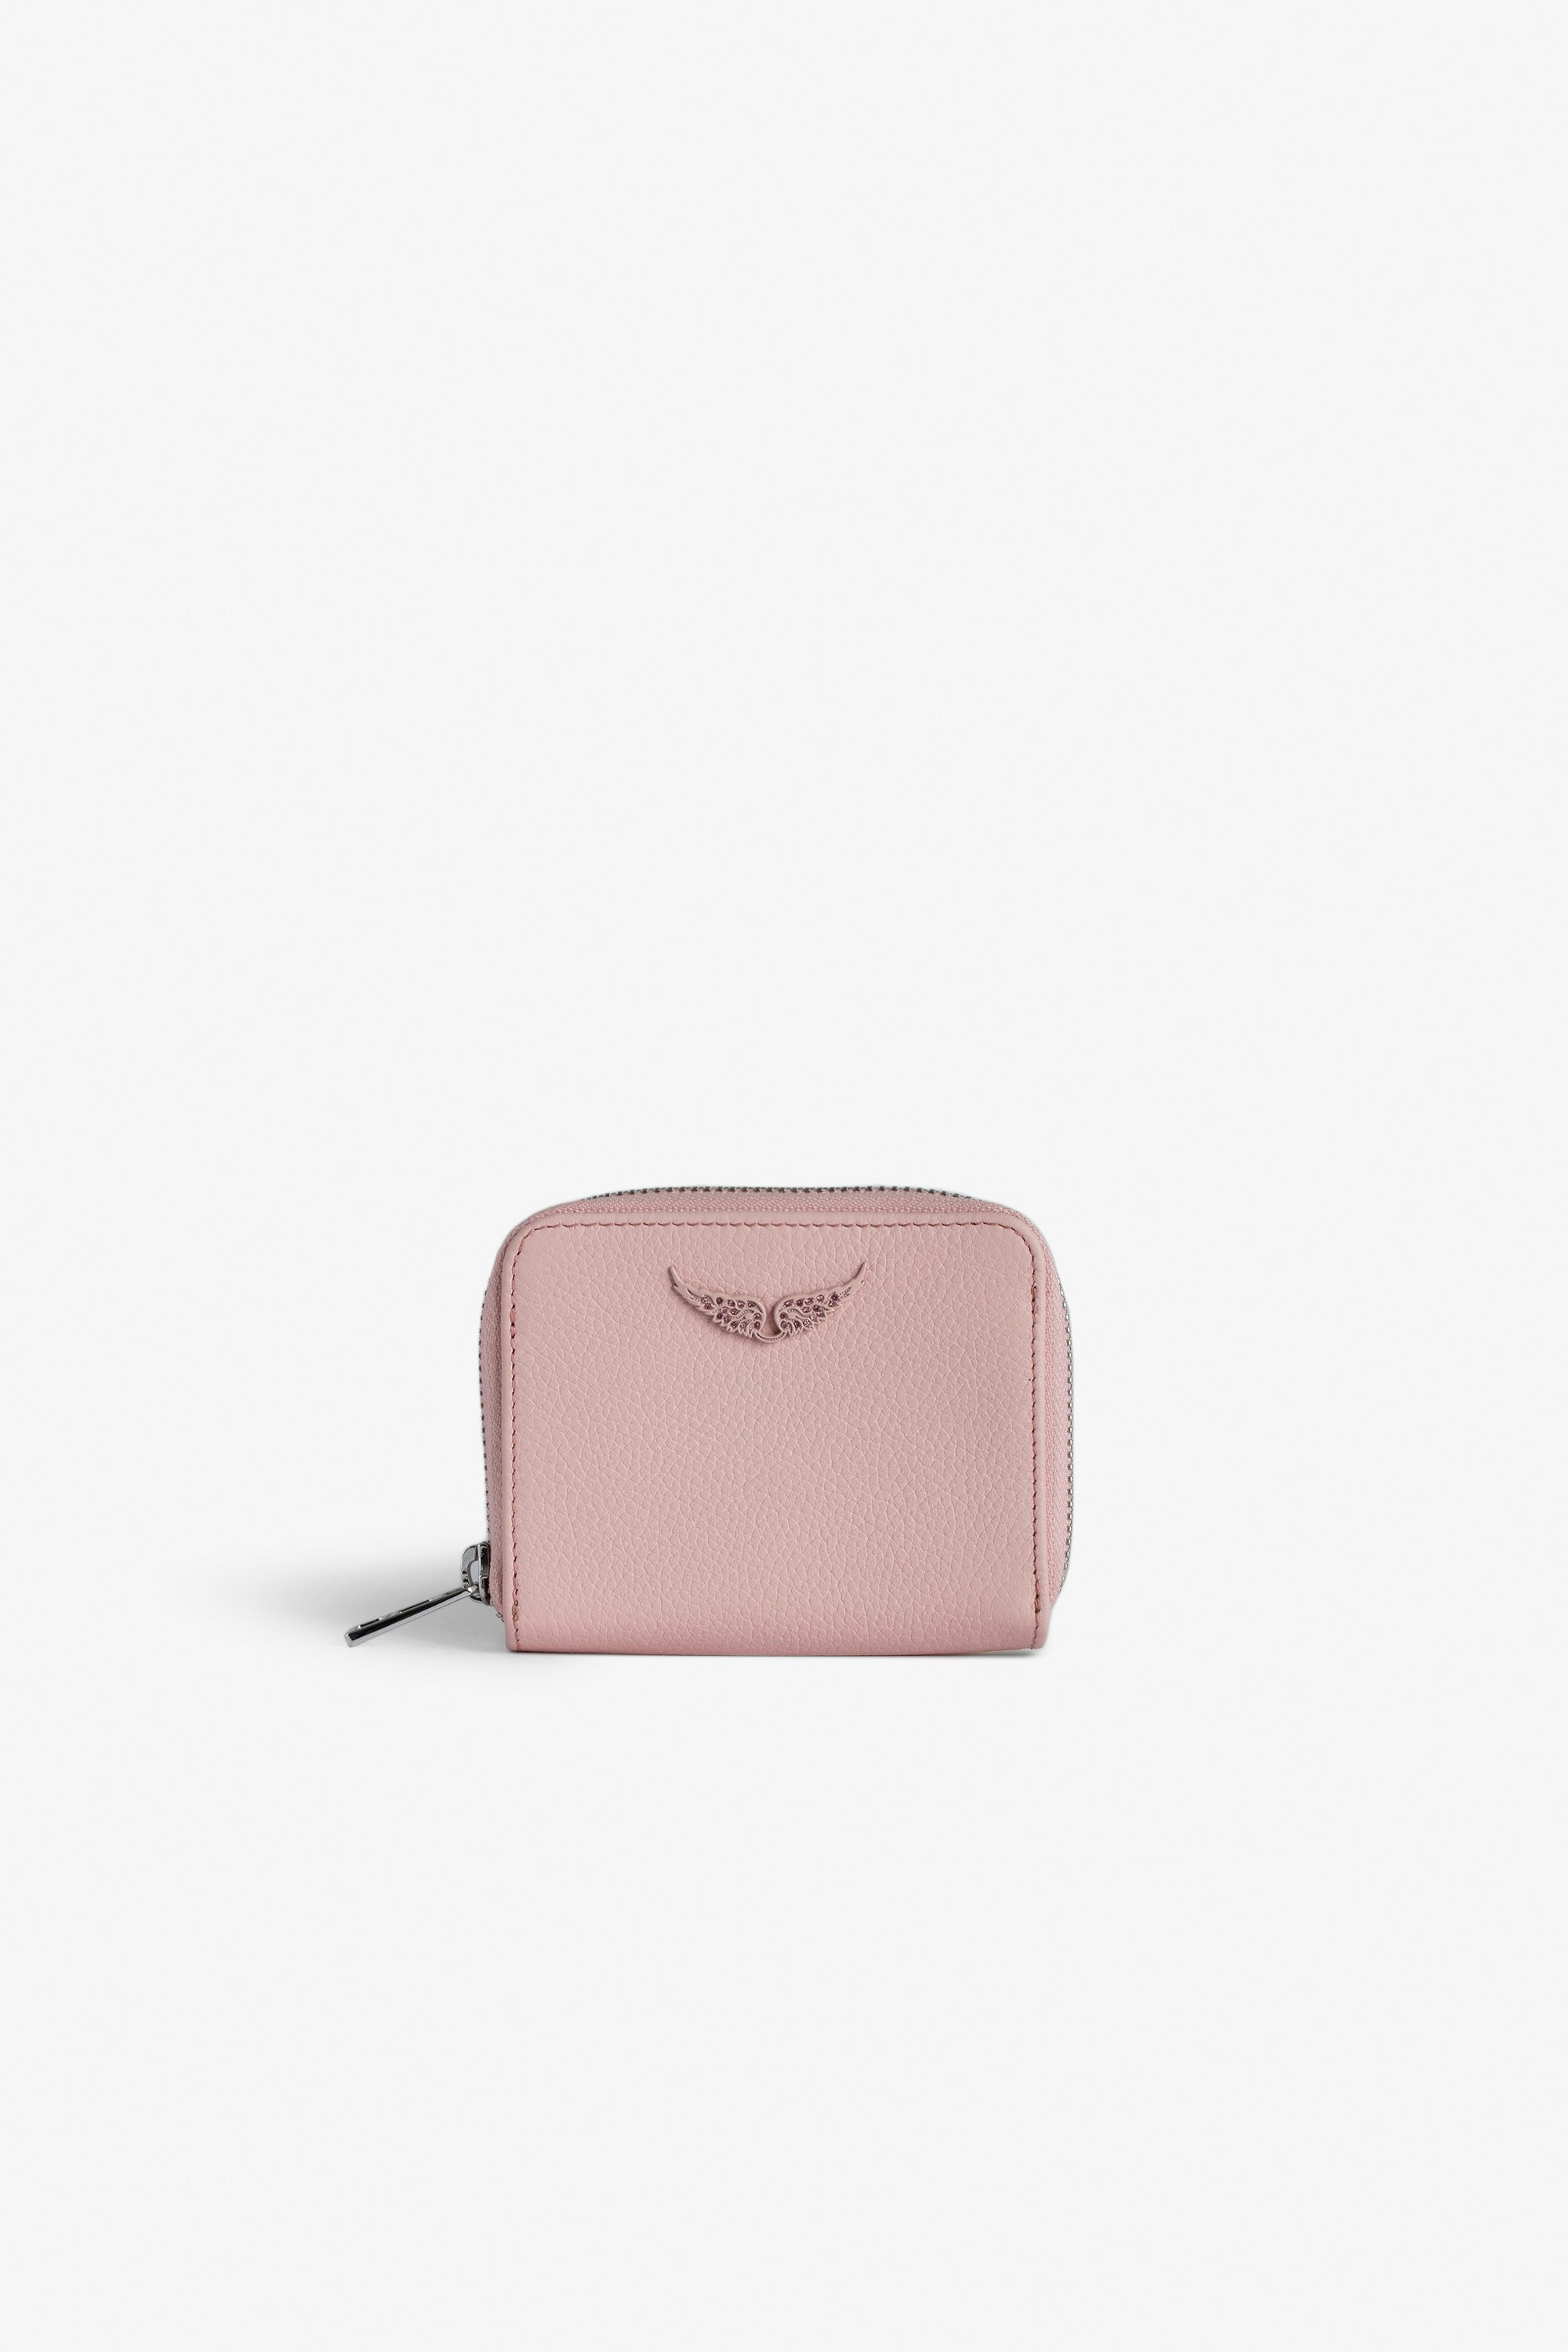 Portamonete Mini ZV Portafoglio in pelle granulata rosa con charm ali in strass da donna.